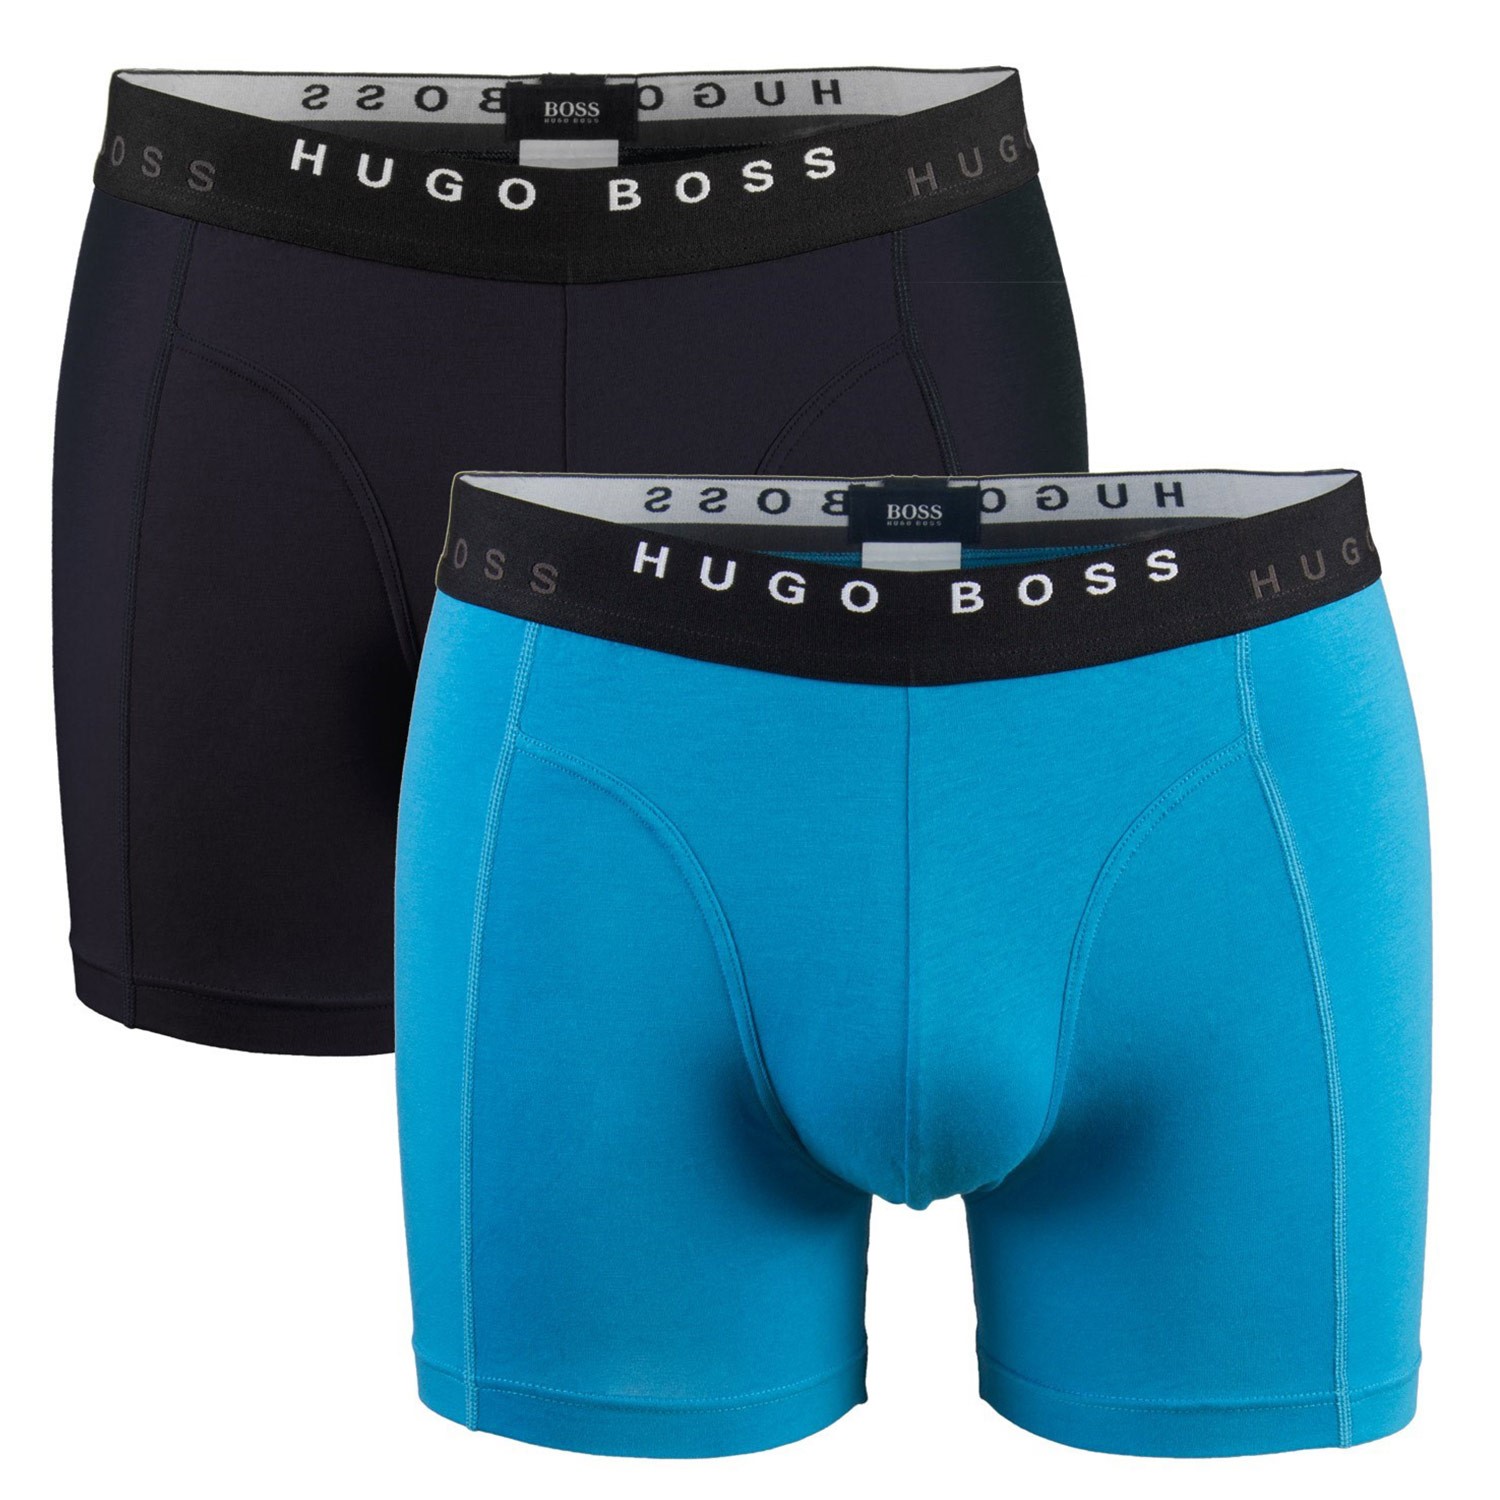 hugo boss boxer short